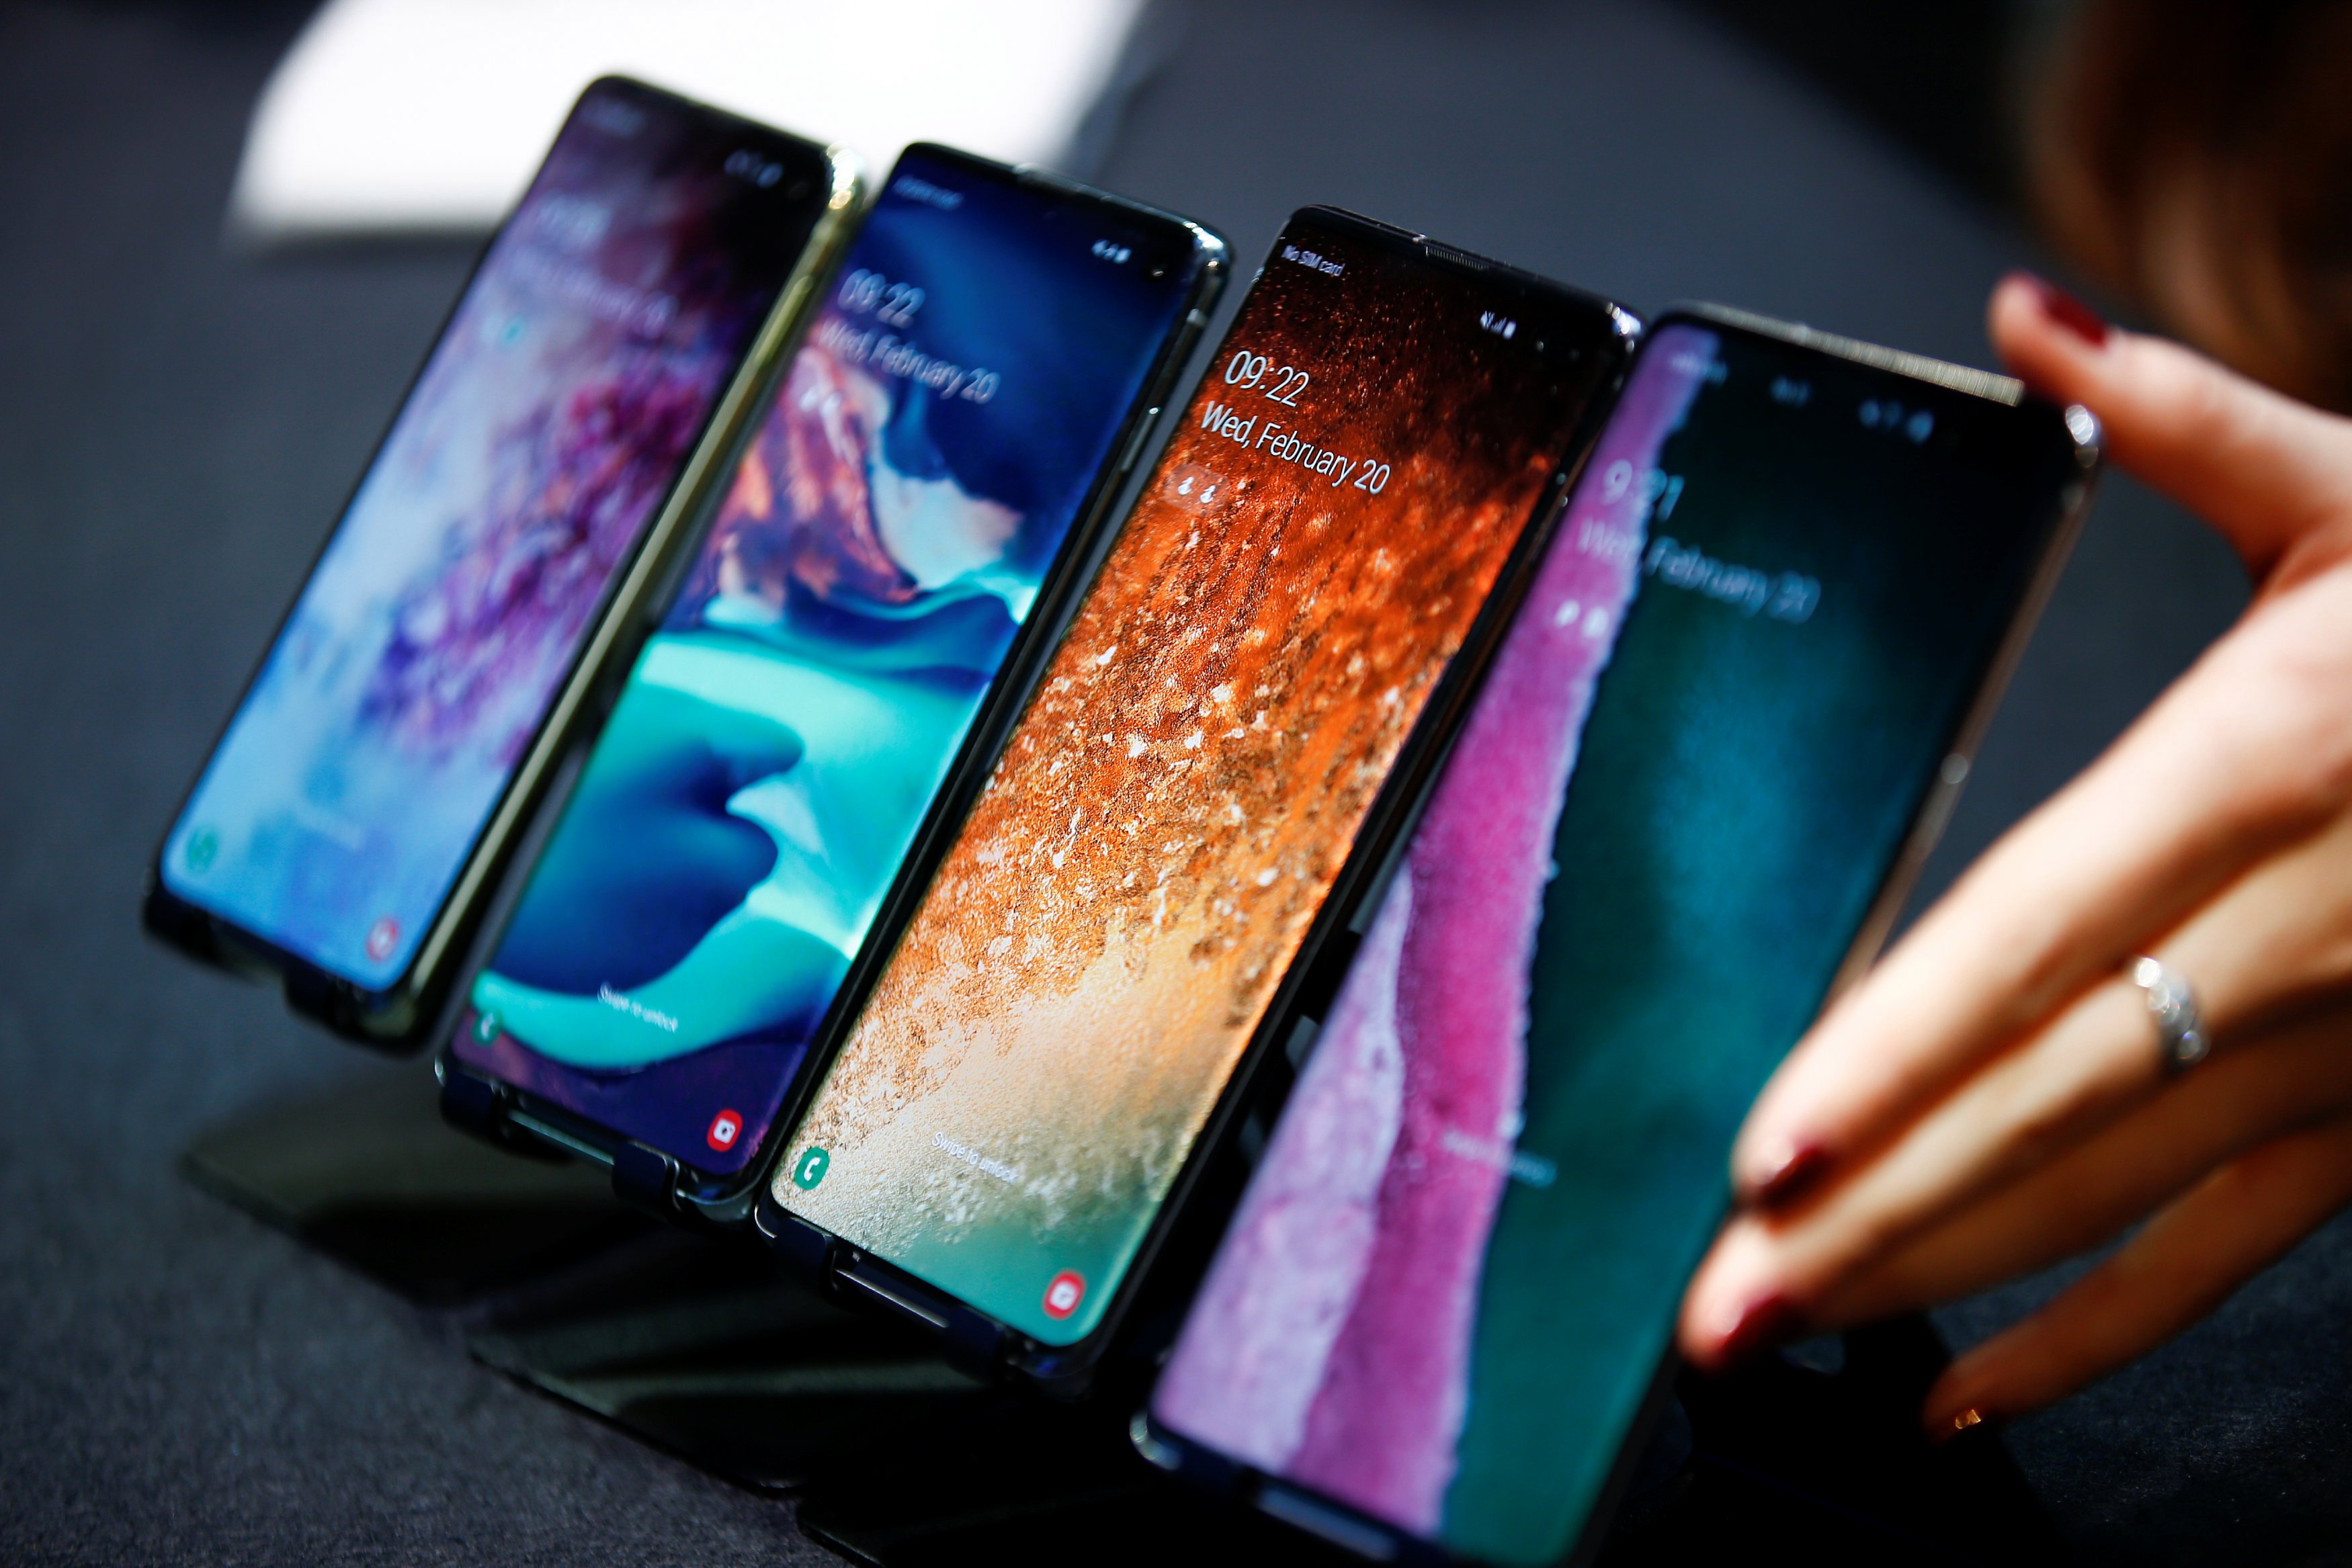 أسعار ومواصفات أكثر 10 هواتف مبيعًا بالأسواق المصرية خلال شهر سبتمبر 2019